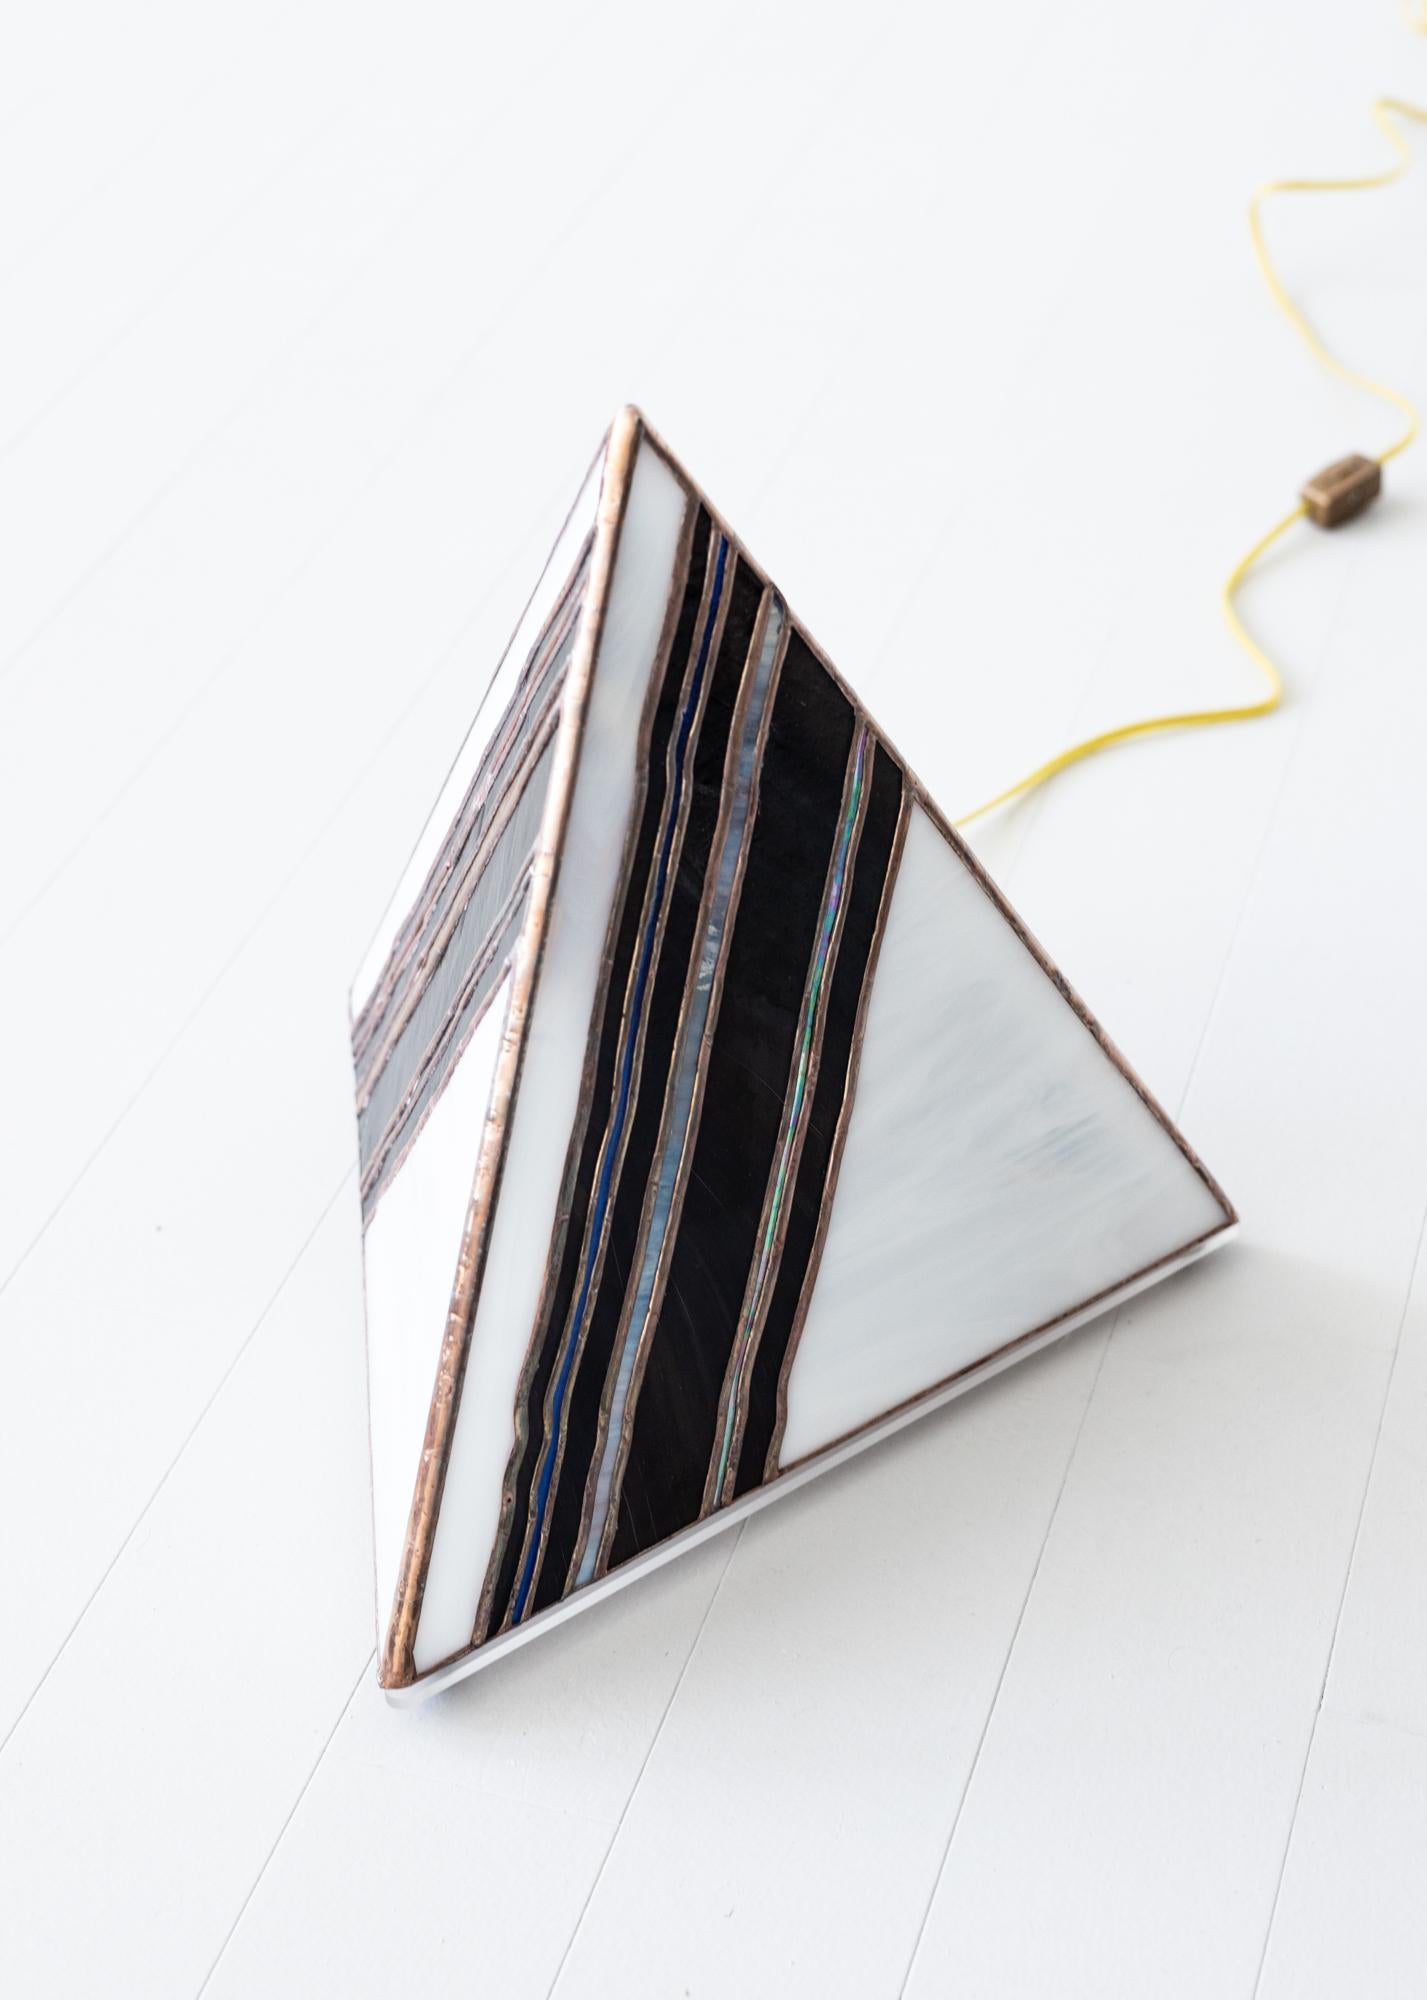 Lampe pyramide au coup de pinceau, verre teinté à la main, motif abstrait - Sculpture de Jason Andrew Turner